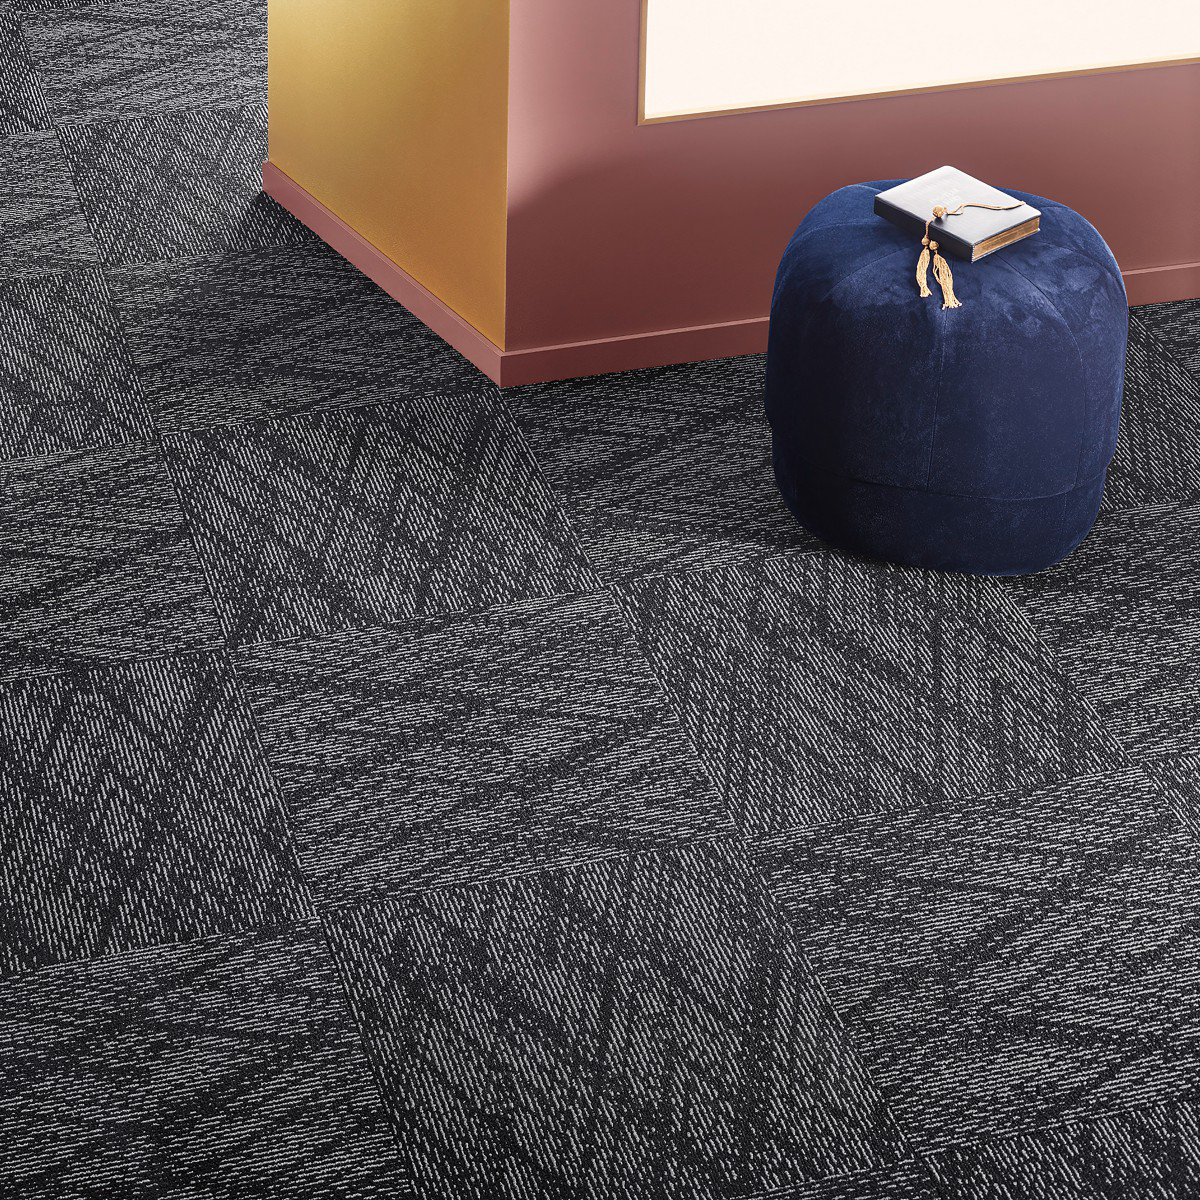 Vorwerk & Co Teppichwerke GmbH & Co KG Carpet Tile